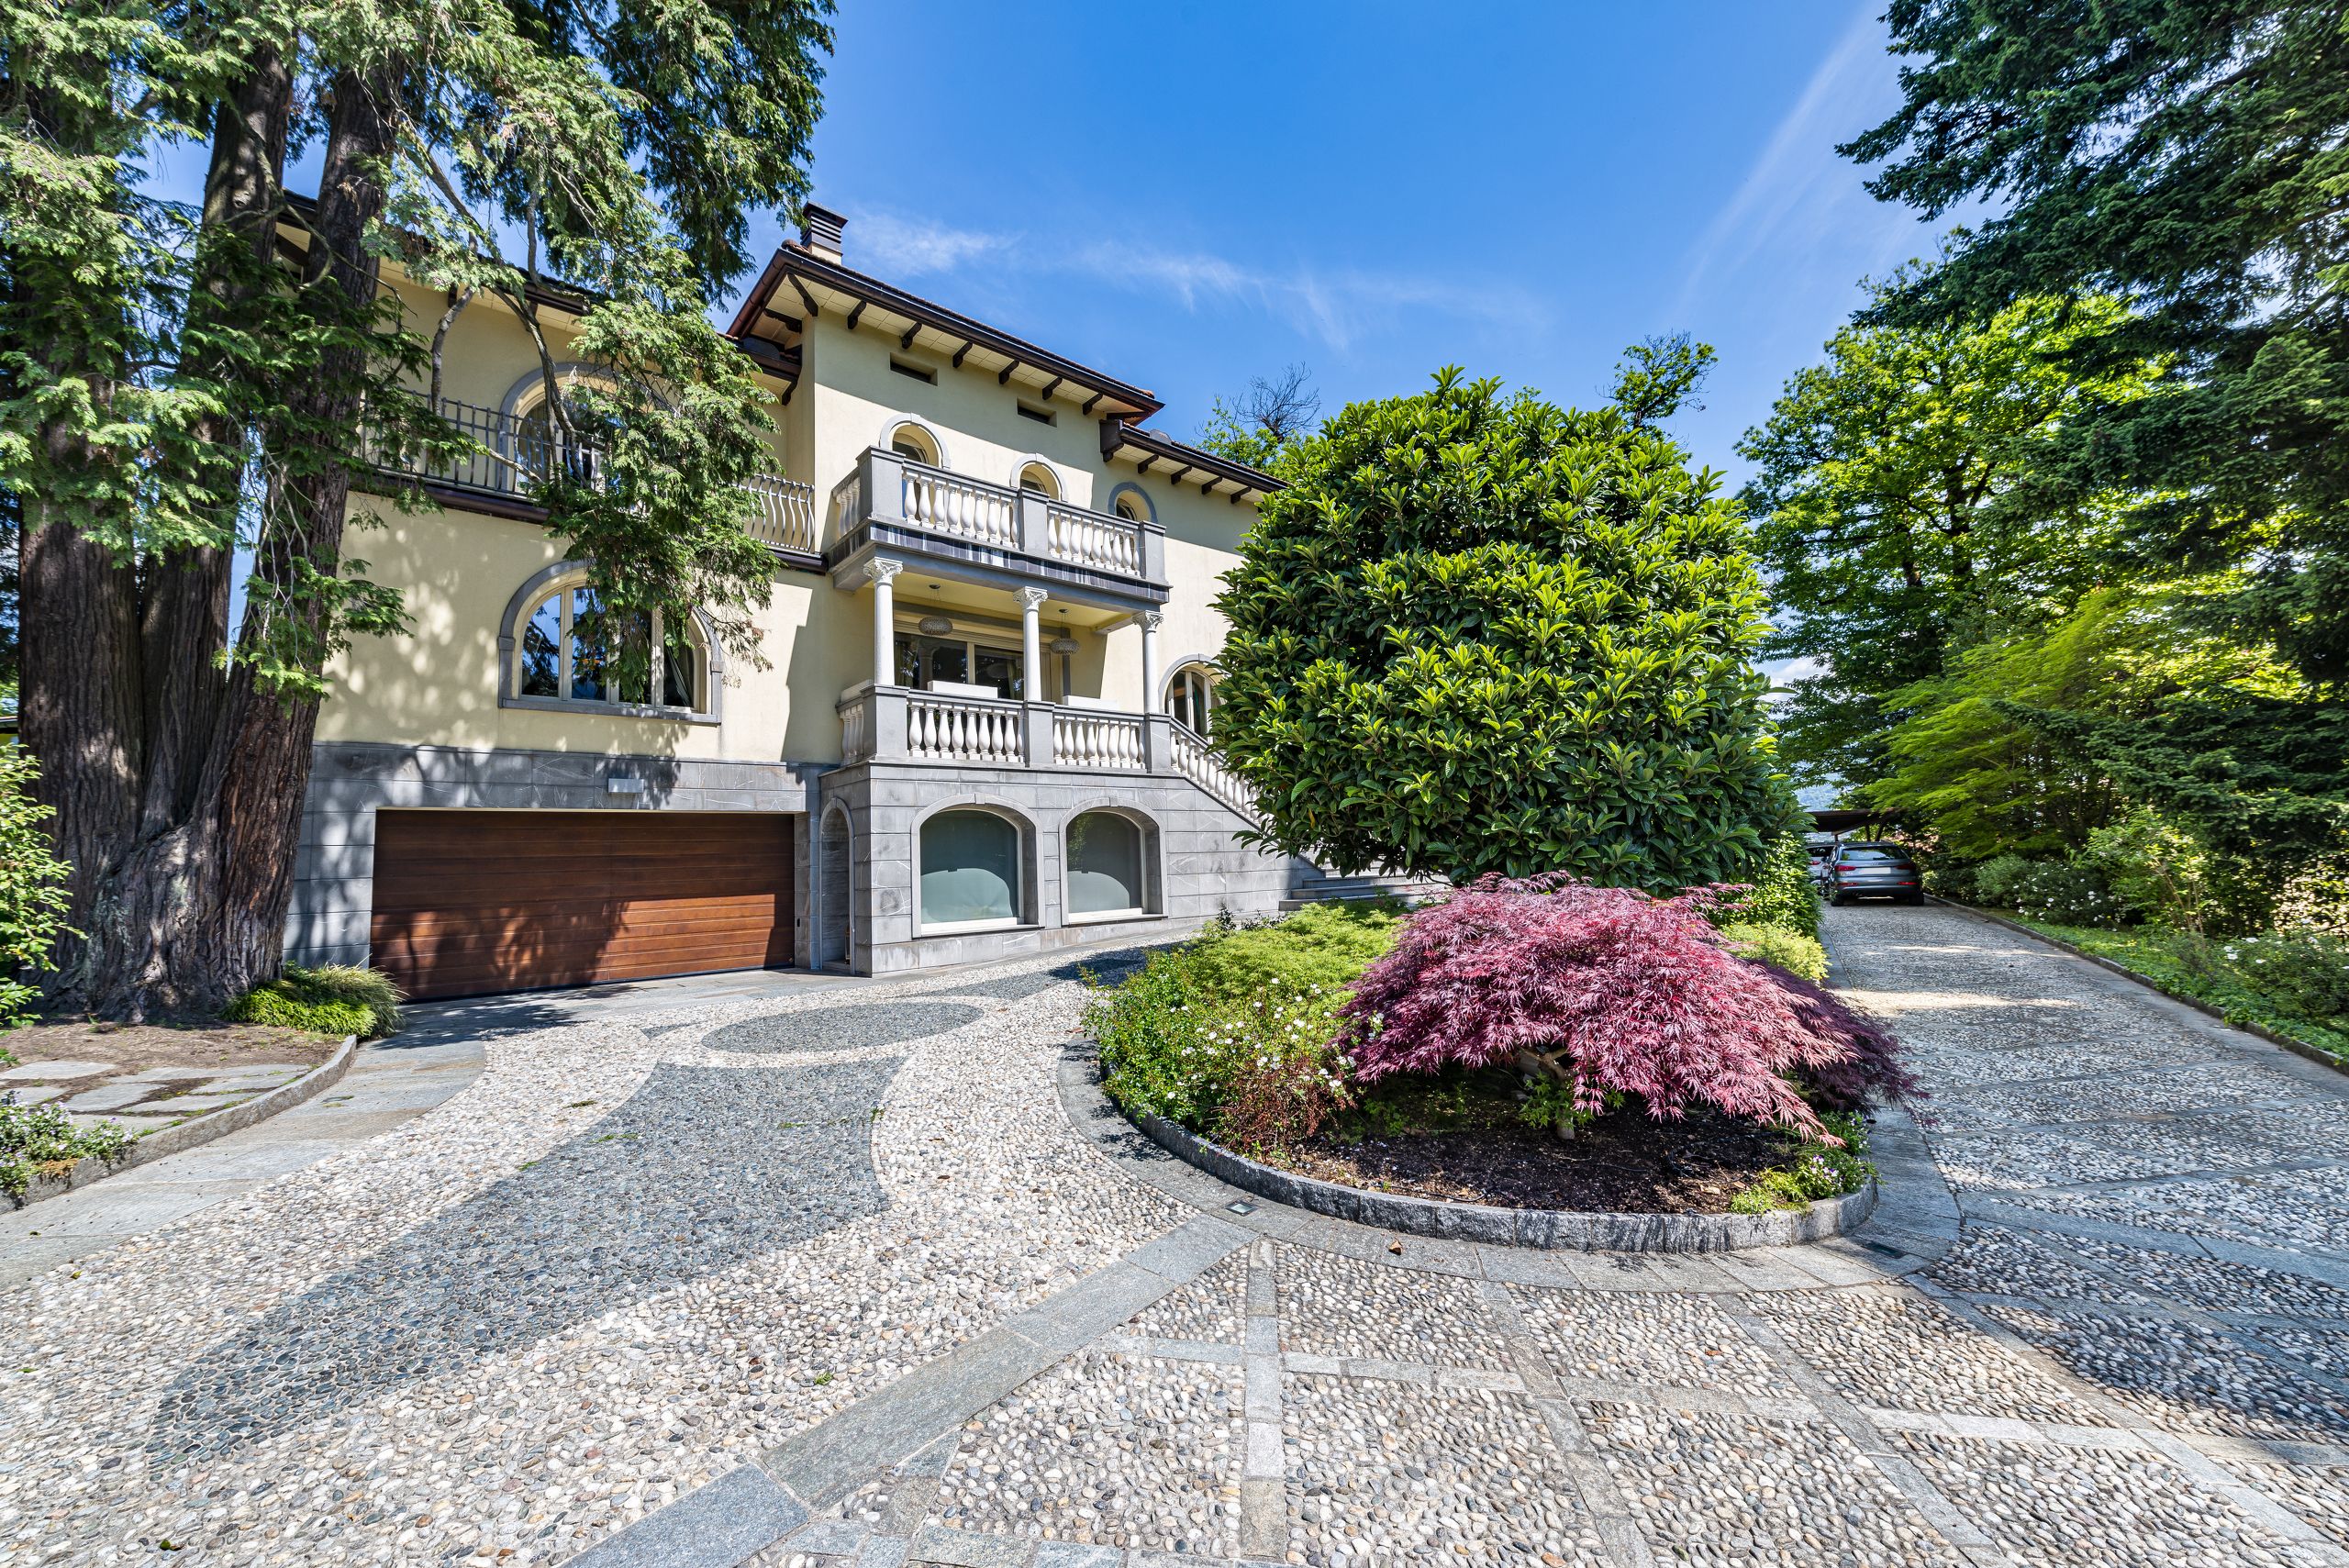 Portal Inmobiliario de Lujo en Gentilino, presenta chalet de lujo venta en Collina d'Oro, villa residencial para comprar y propiedad exclusiva e independiente en venta en Tesino.